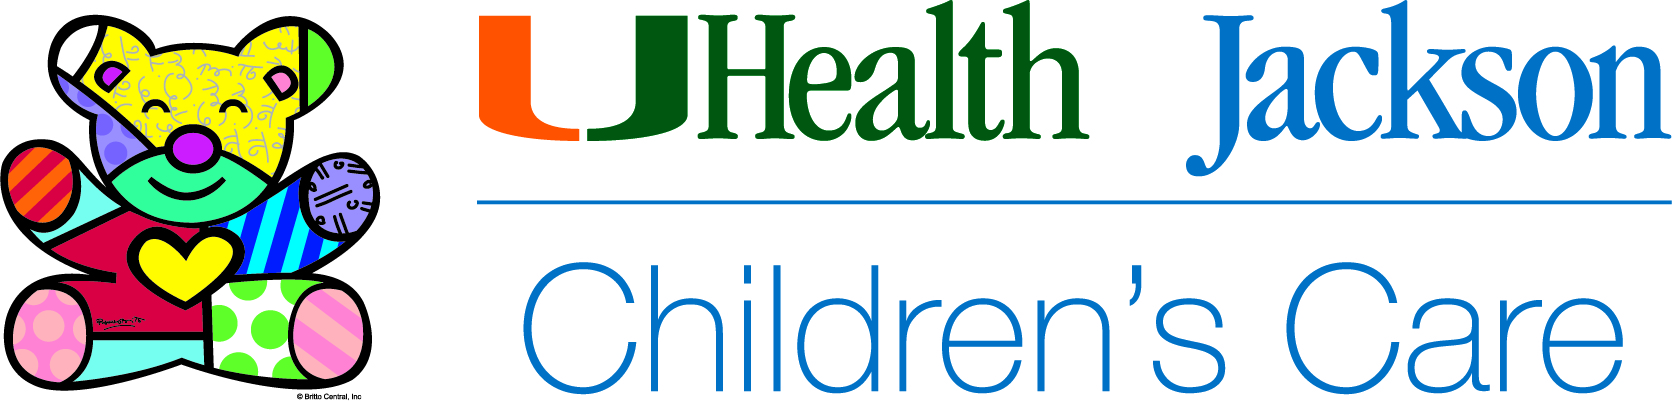 Jackson Children's Care logo